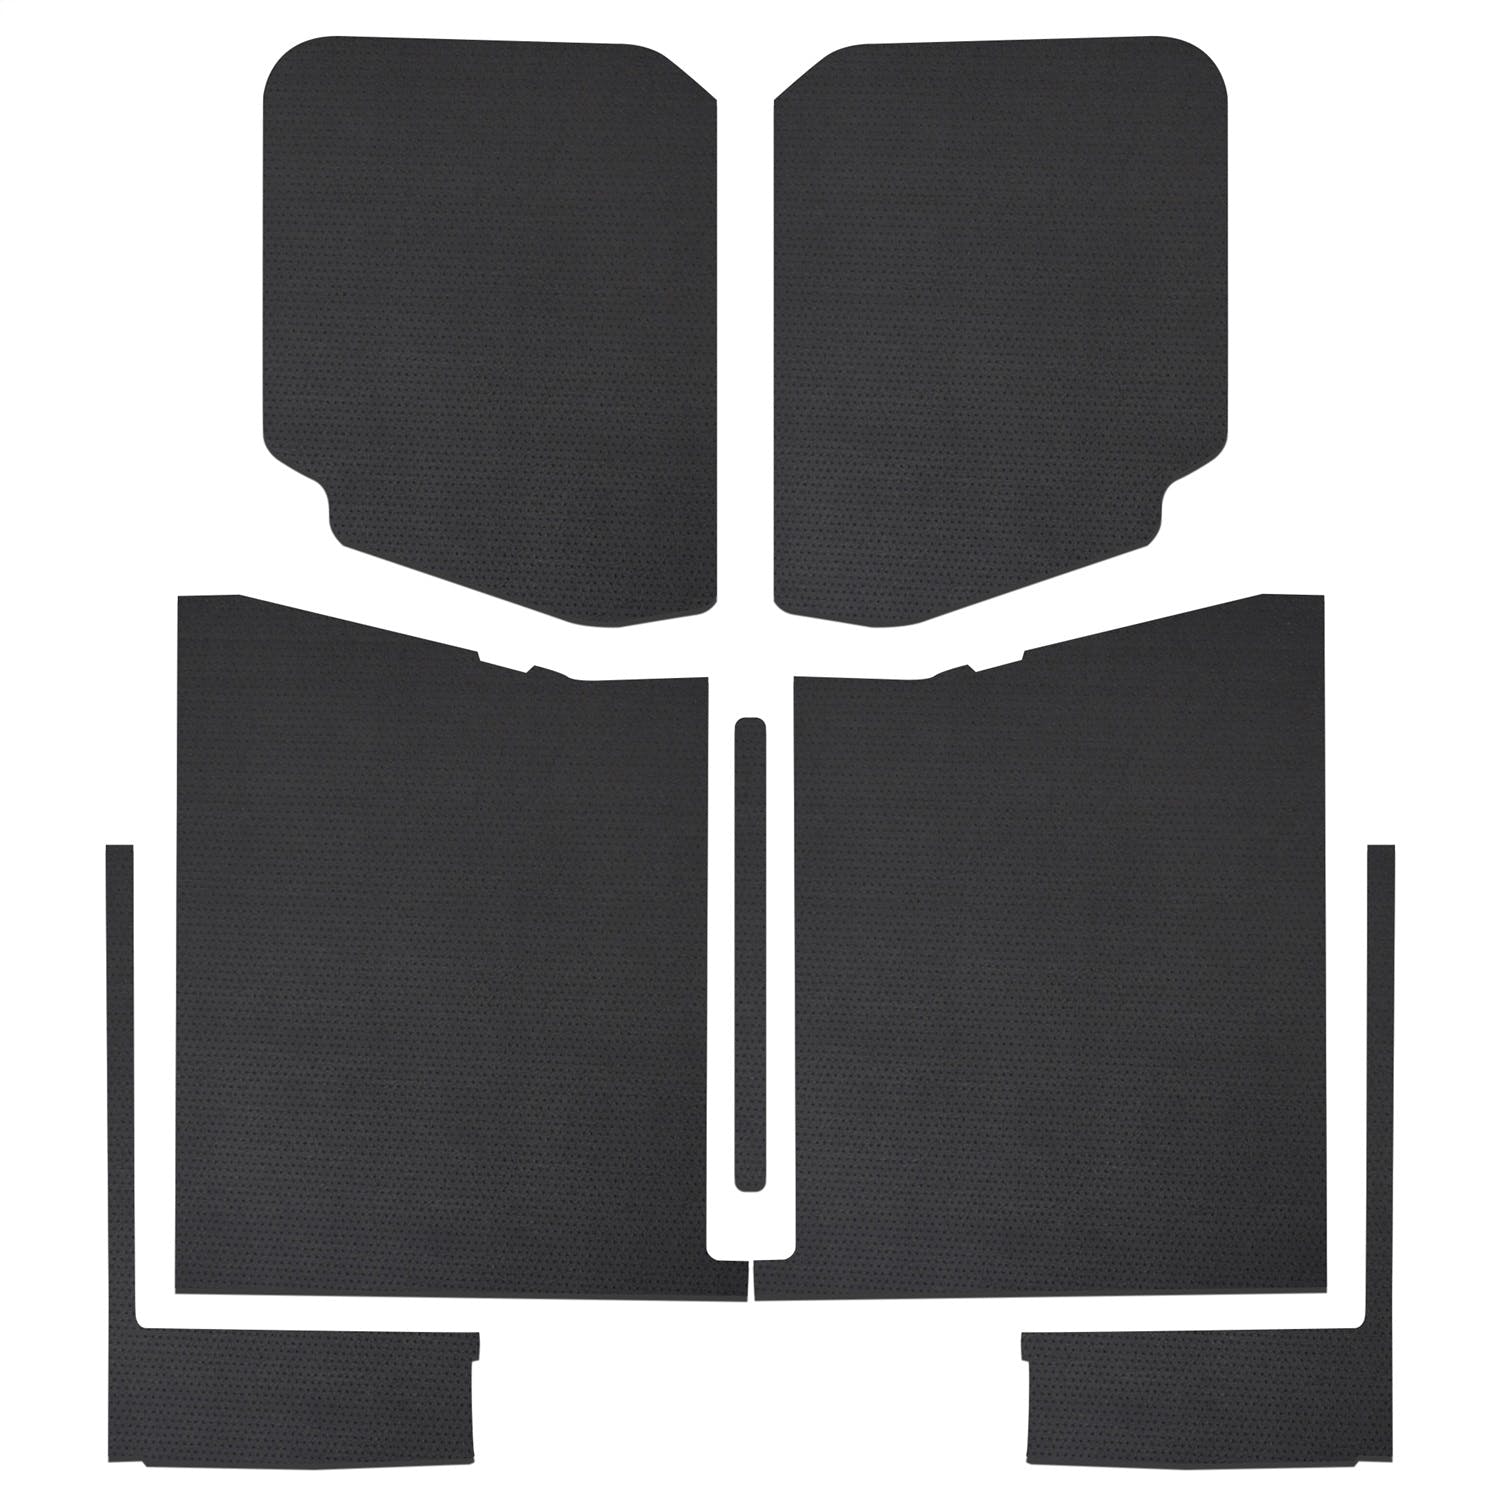 Design Engineering, Inc. 50187 Jeep® Gladiator Leather Look Headliner Complete Kit, Black (7-pc)